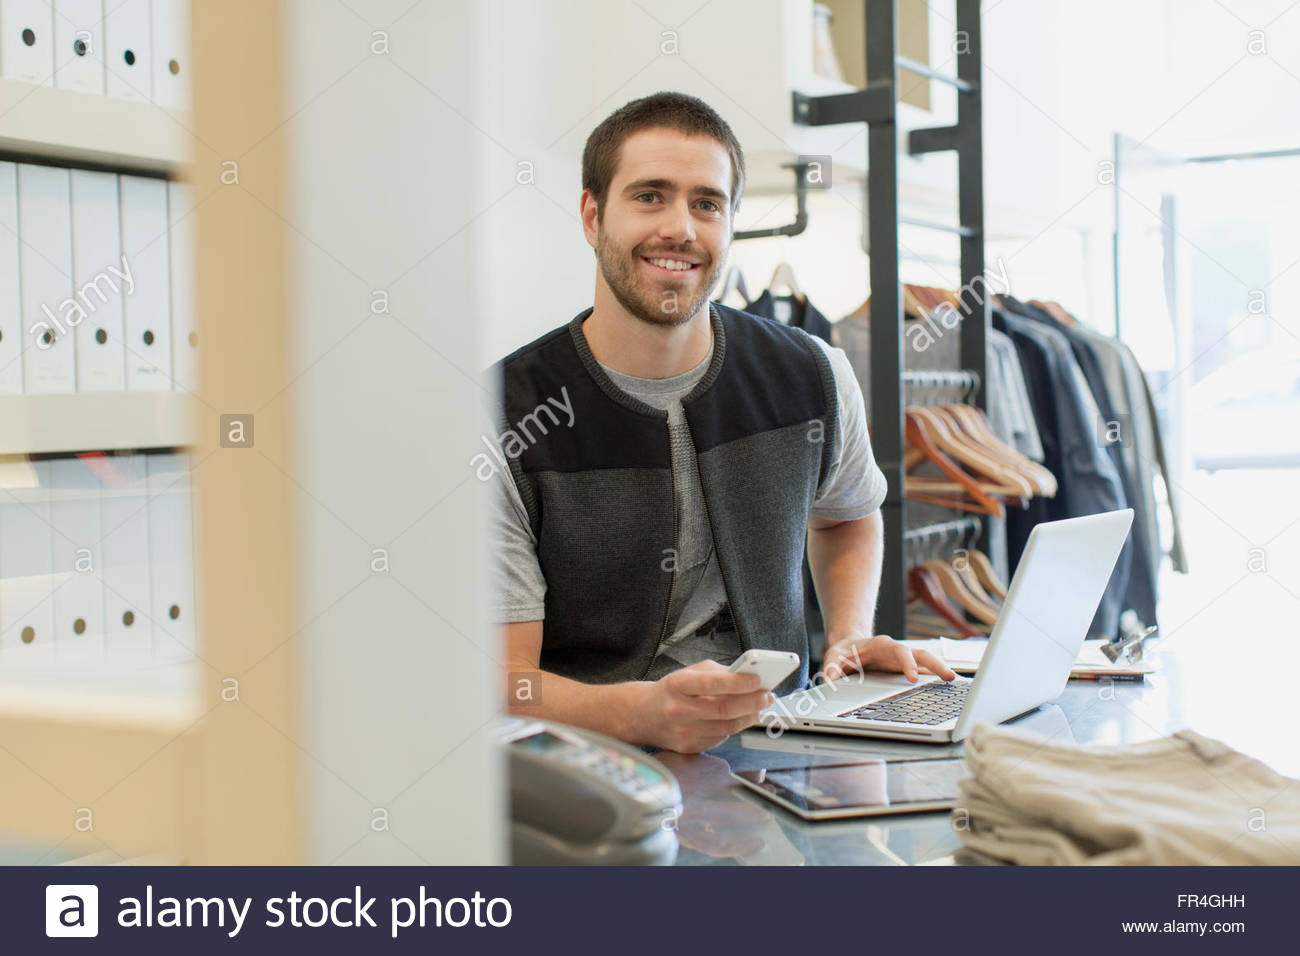 Bärtige Schreiber mit Laptop, Tablet pc und Handy am Schreibtisch. Stockfoto